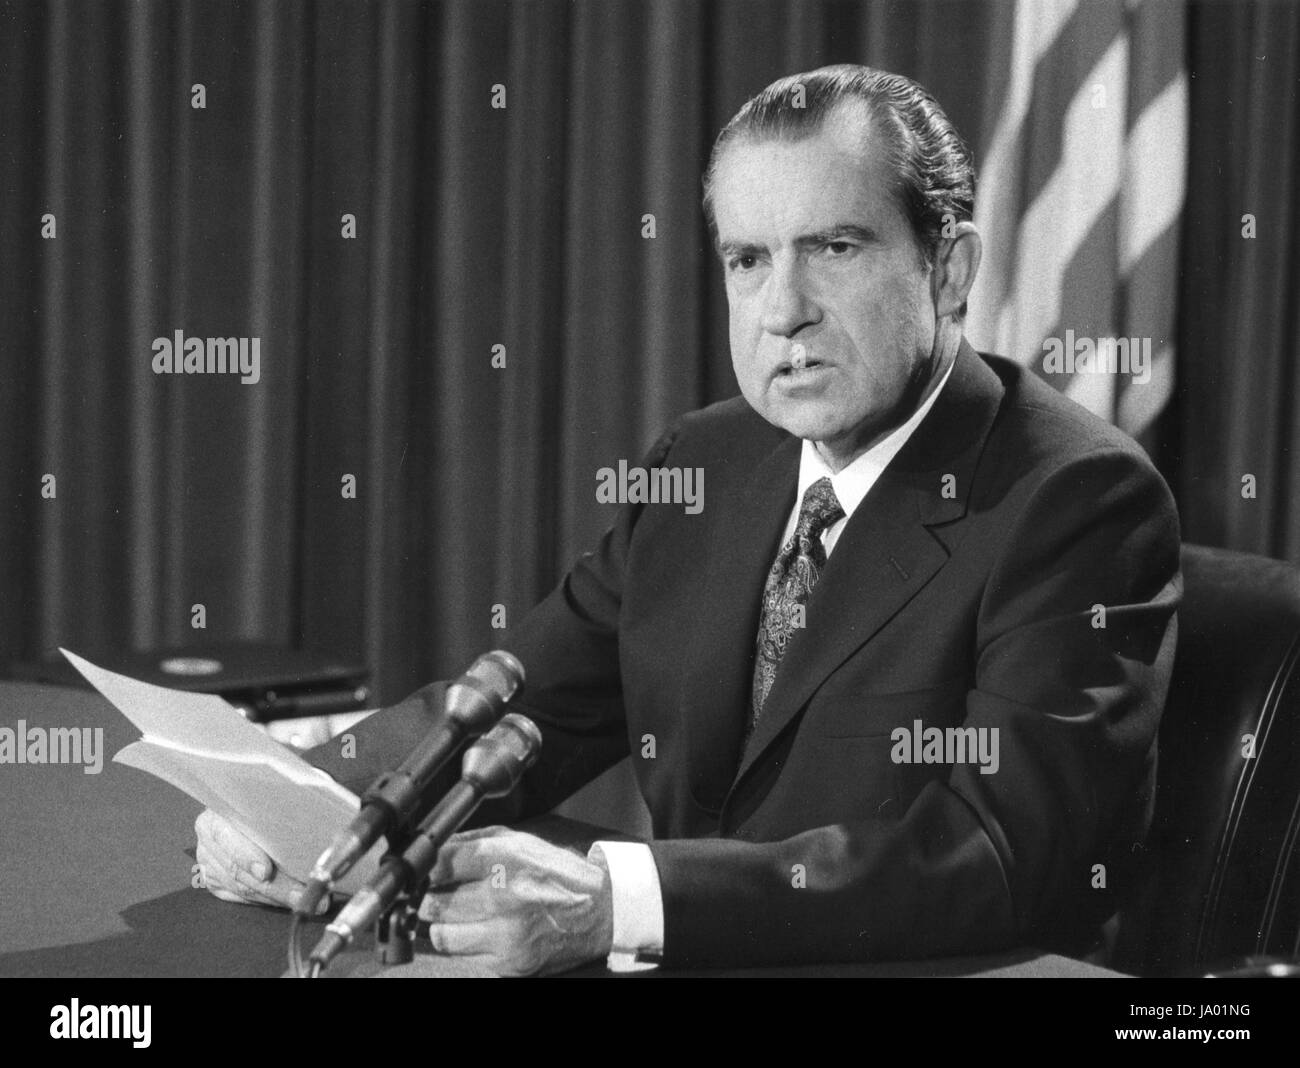 Le président Richard M. Nixon après administration d'un rapport de politique étrangère, Washington, DC, 02/25/1971. Banque D'Images